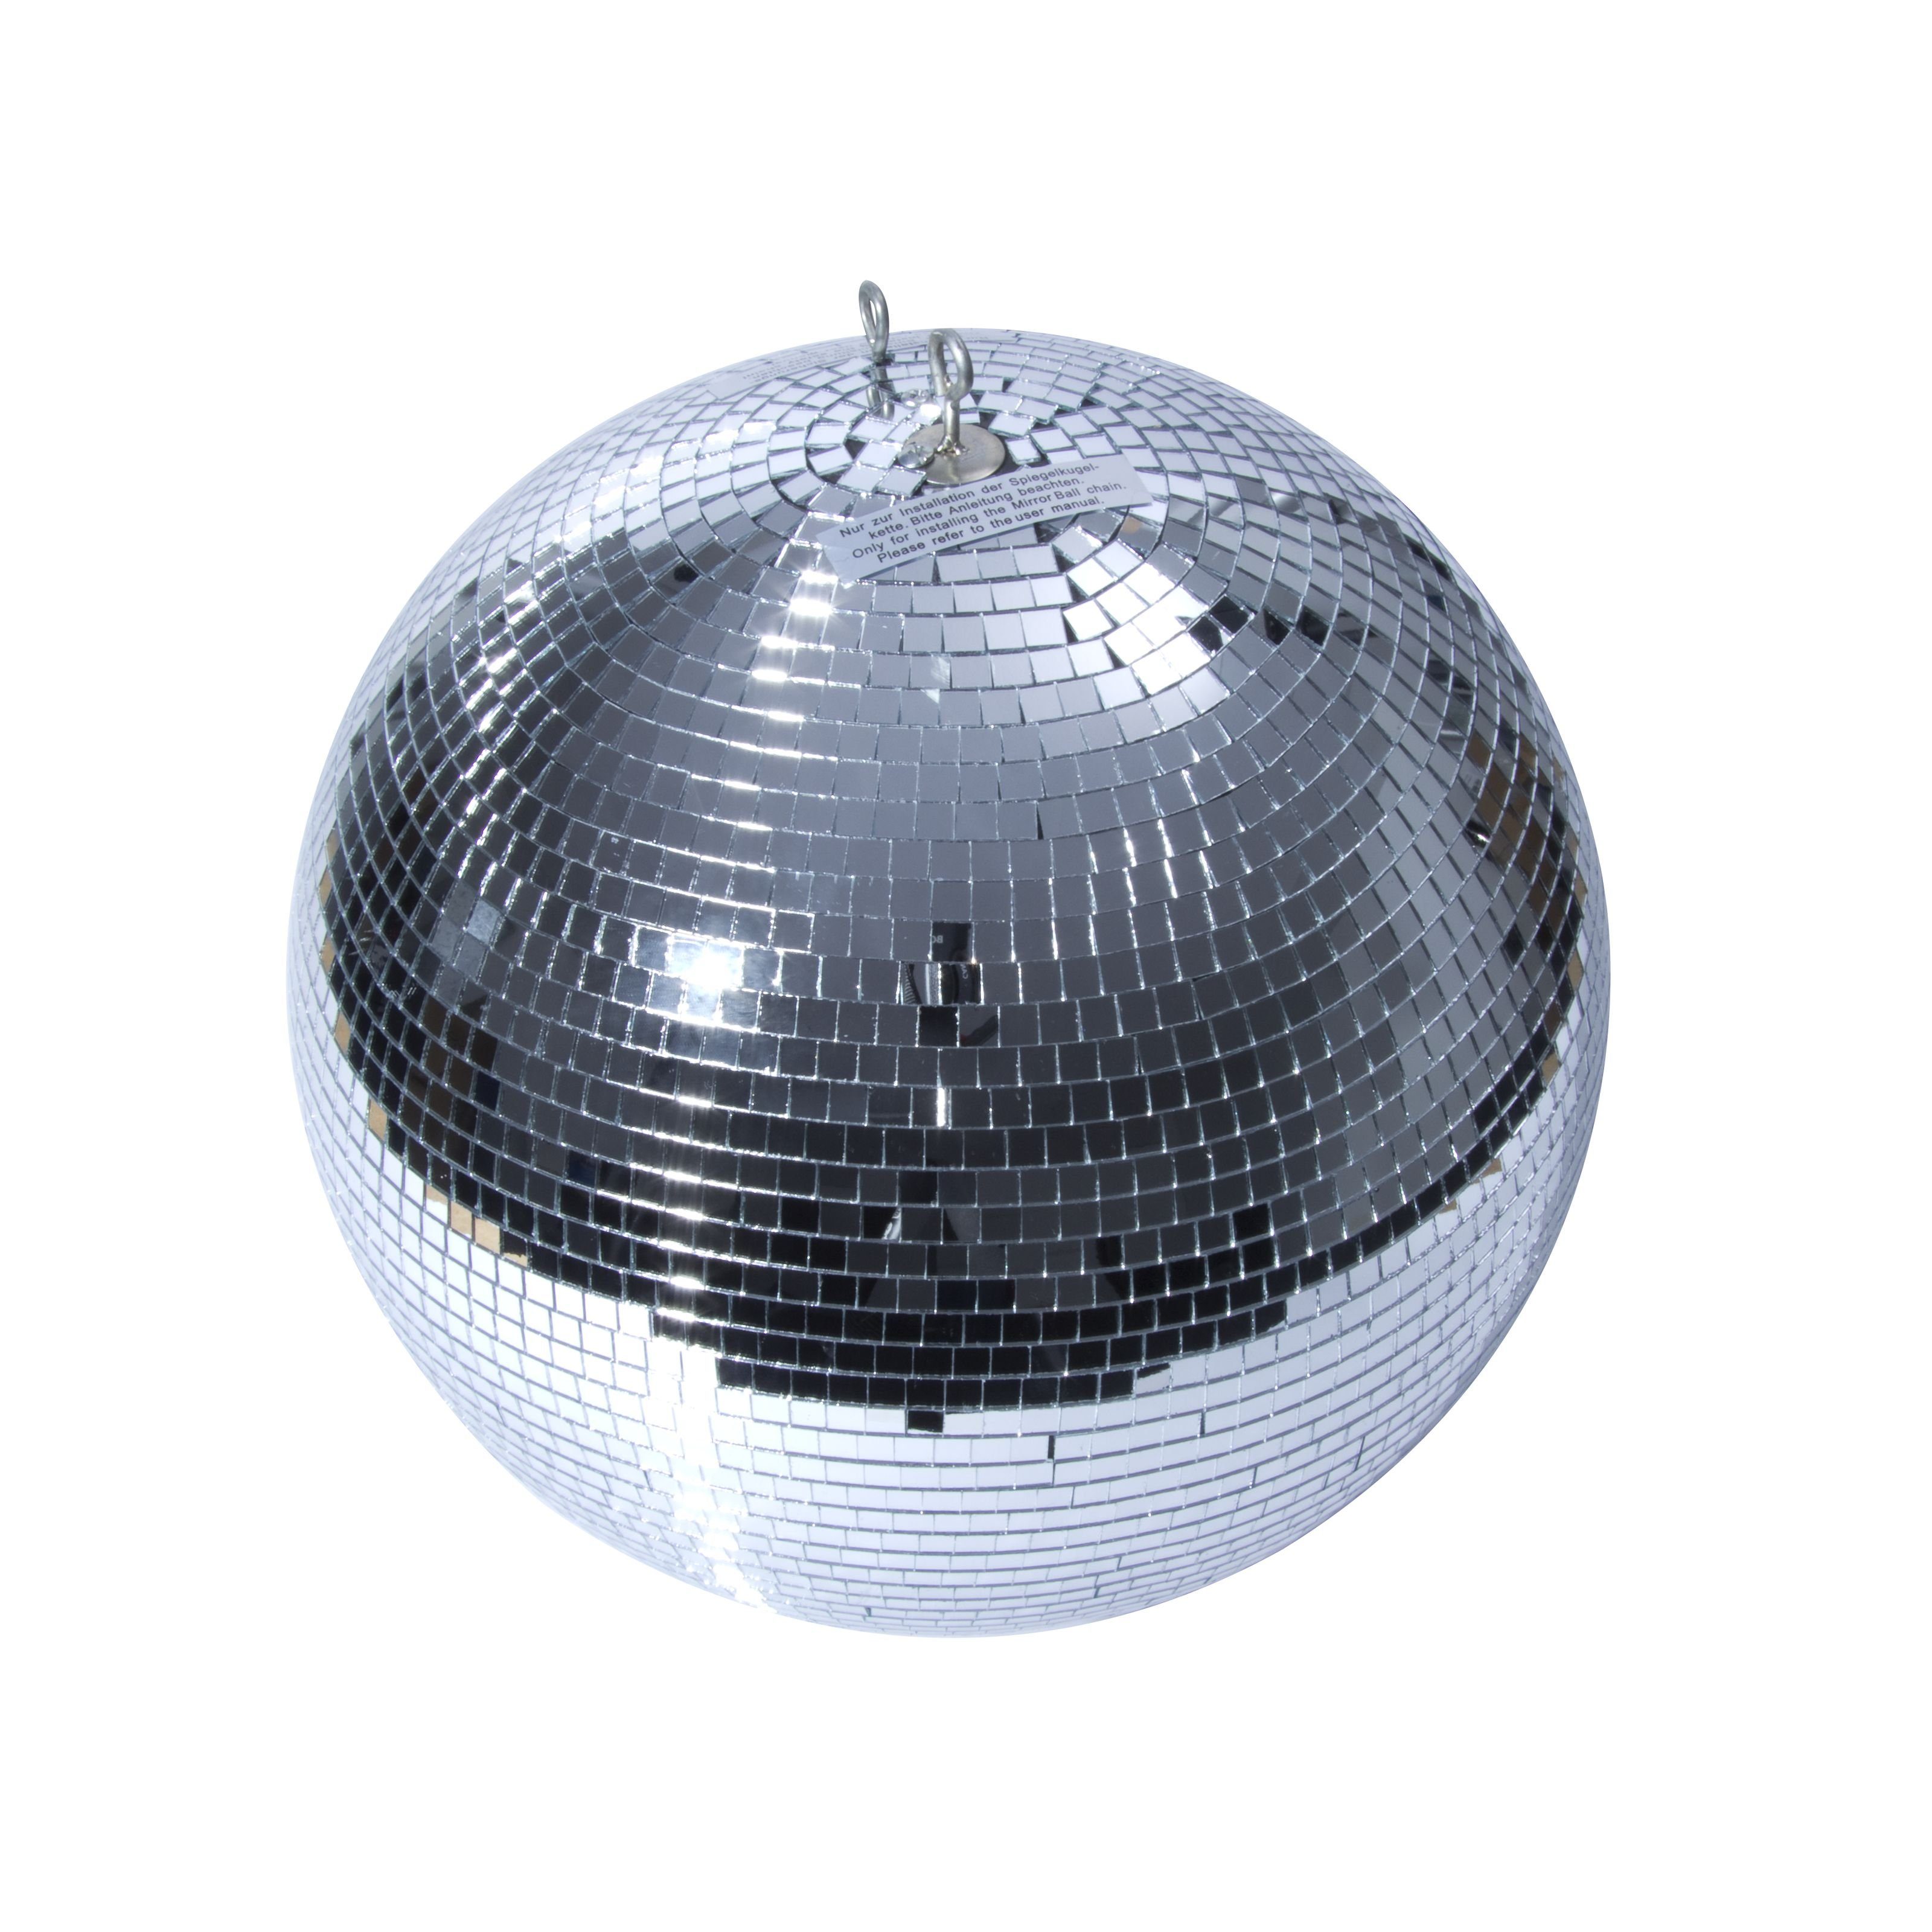 40 Professional Discolicht, 10x10mm lightmaXX cm Spiegelkugel Reflektoren Mirrorball -